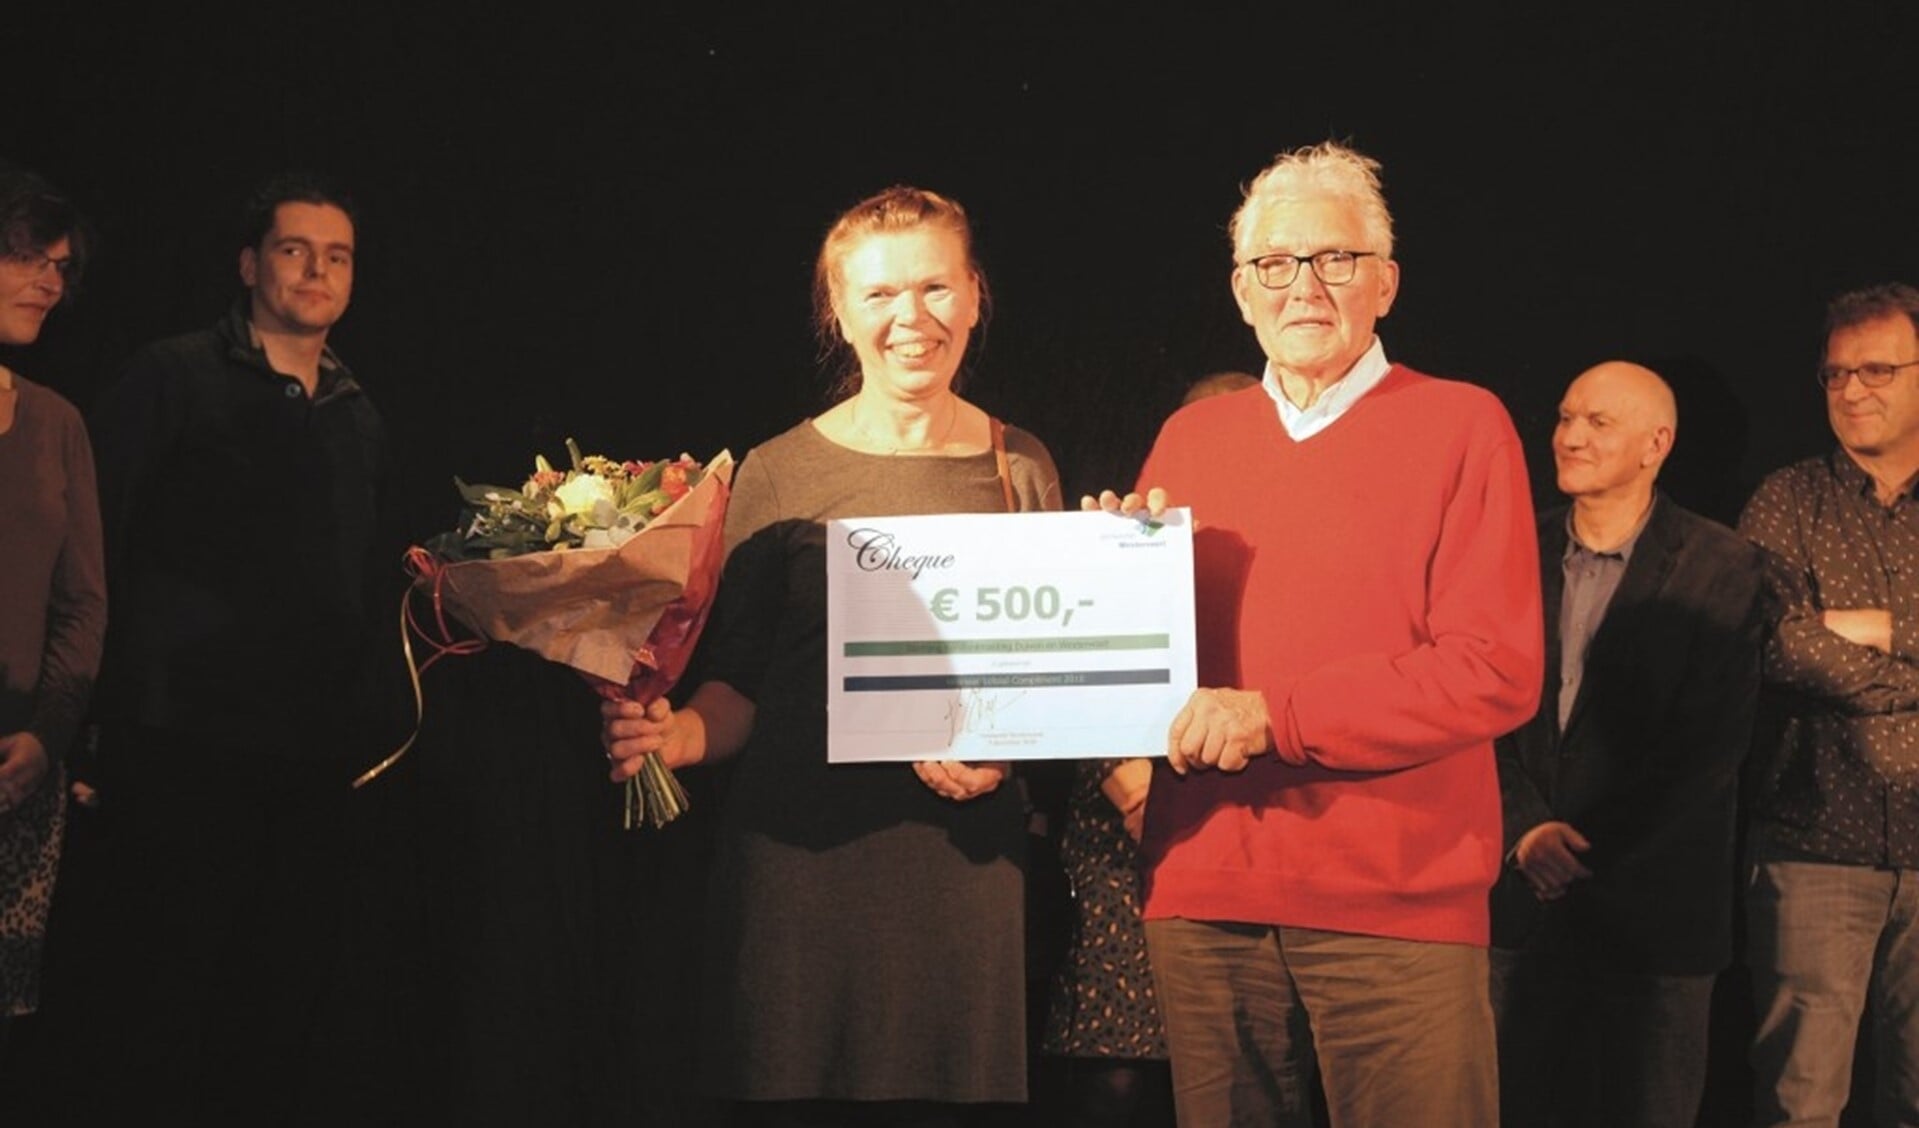 De bestuursleden Piet van Schaik en Hillie van Mourik van de Stichting Kerstontmoeting Duiven en Westervoort met de cheque van 500 euro.